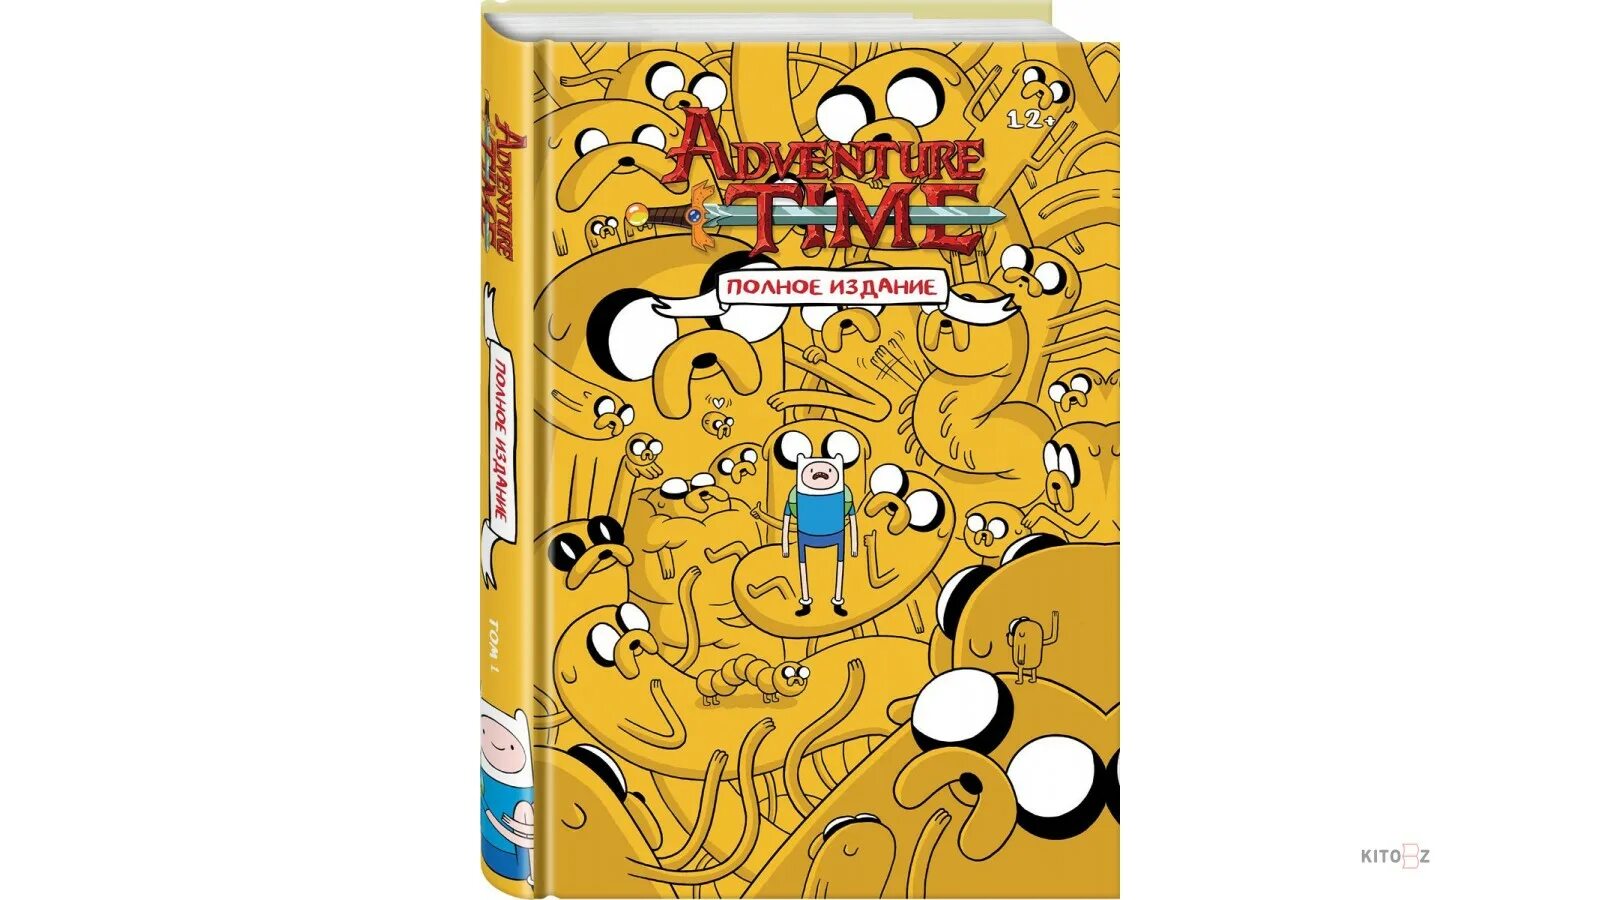 Время приключений том 1. Adventure time полное издание. Время приключений полное издание том 1. Комикс время приключений полное издание. Книга время приключений полное издание.